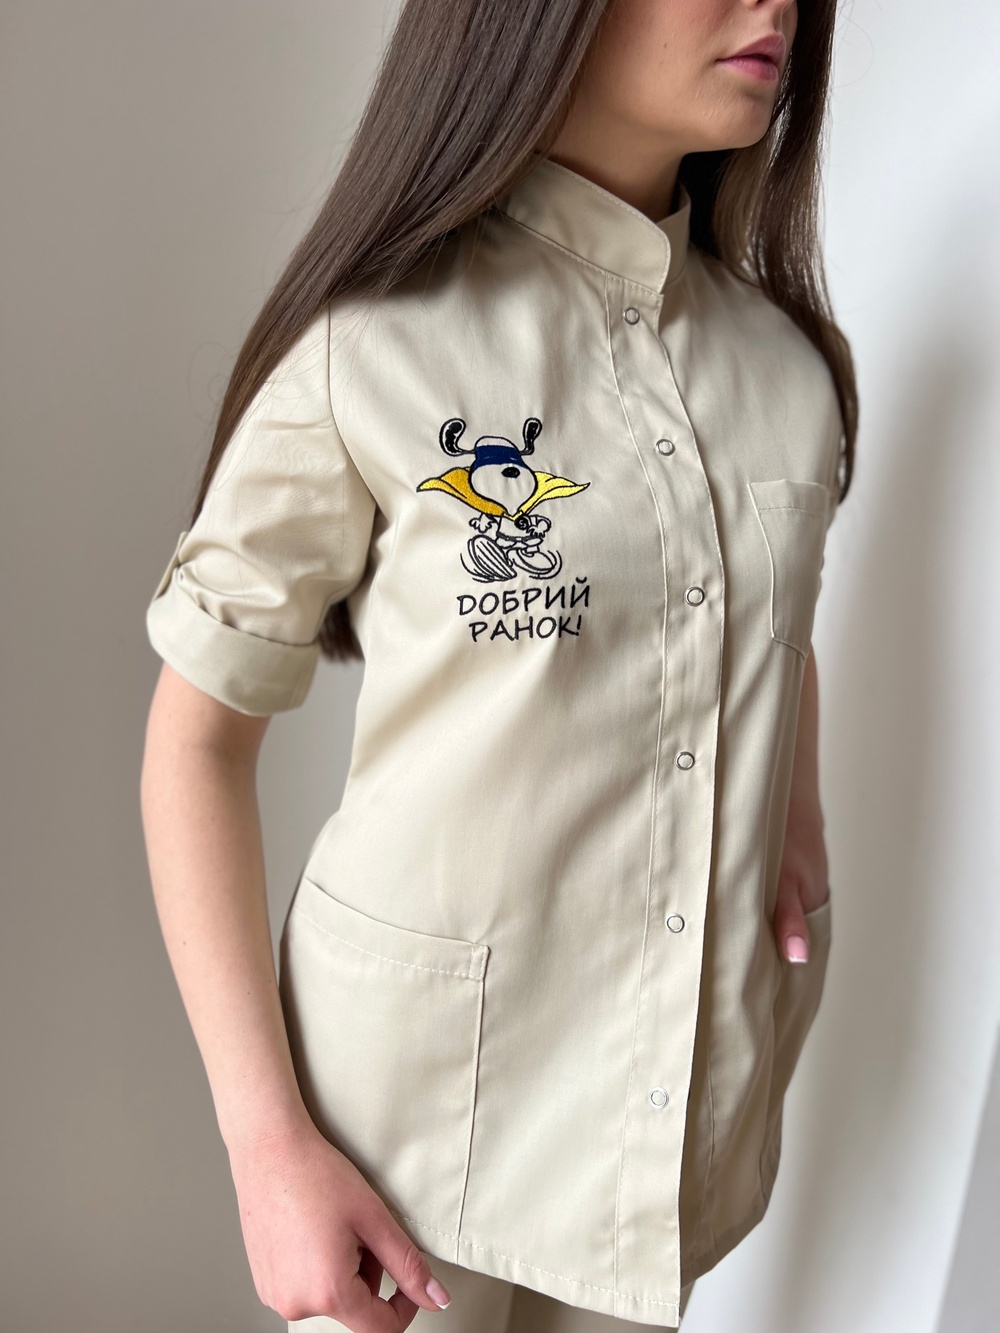 Медицинская куртка арт.17-02 бежевого цвета с вышивкою "Добрий ранок"